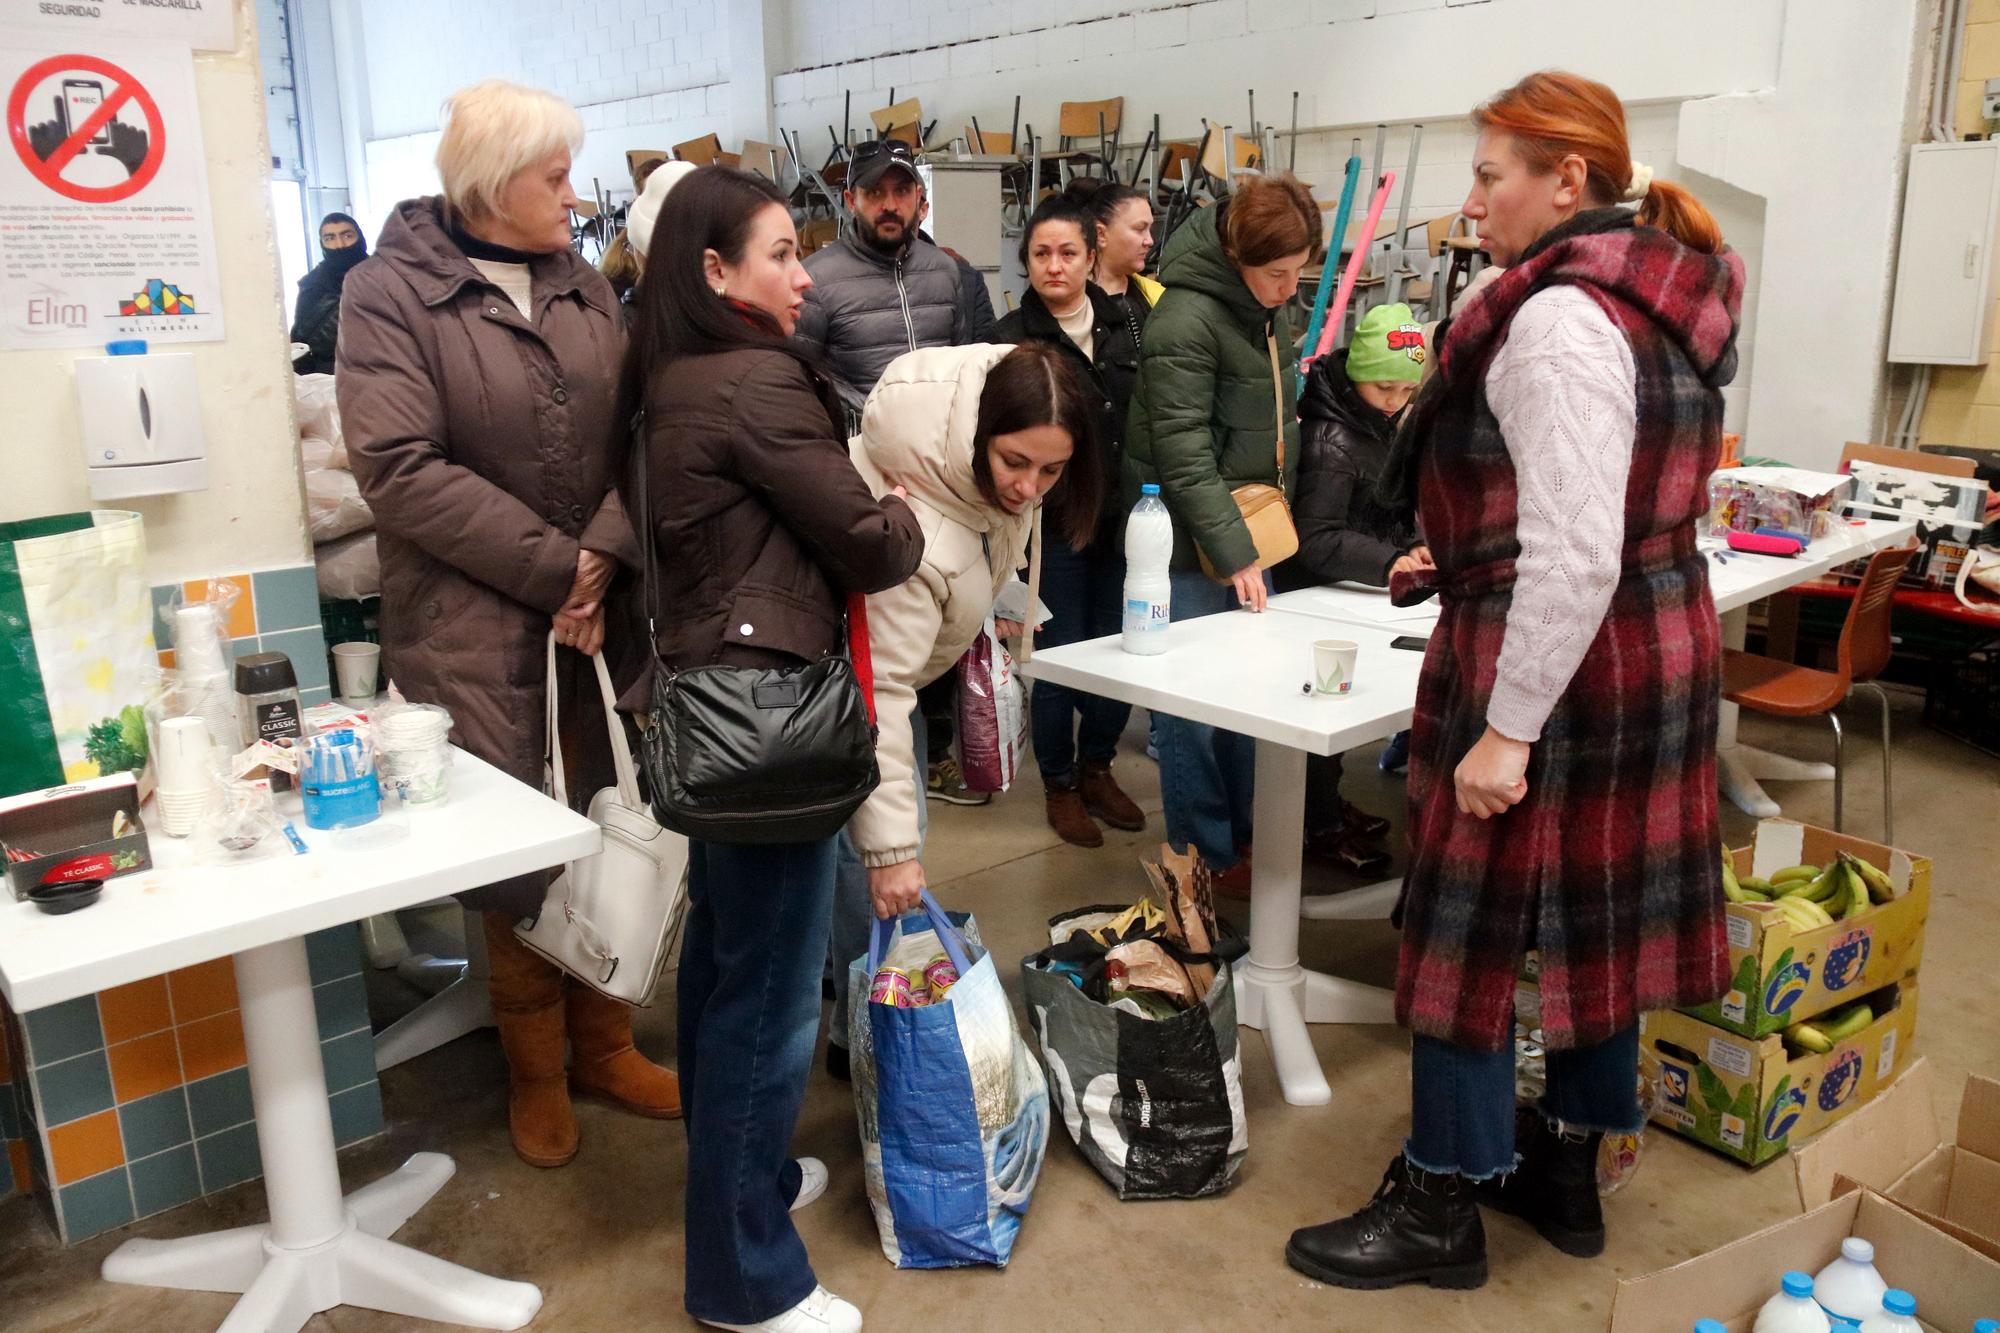 Aliments, roba i suport emocional per a 150 famílies ucraïneses refugiades a les comarques gironines